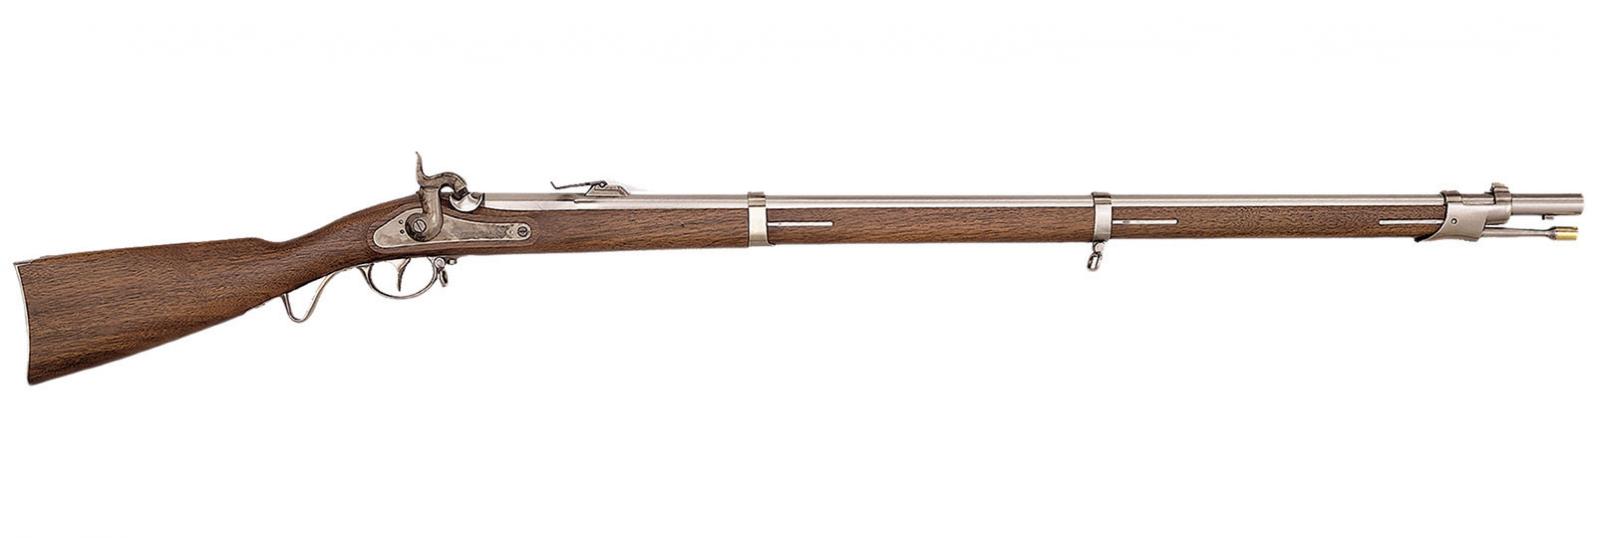 Fusil 1857 WURTTEMBERGISCHEN MAUSER  Cal. 54 